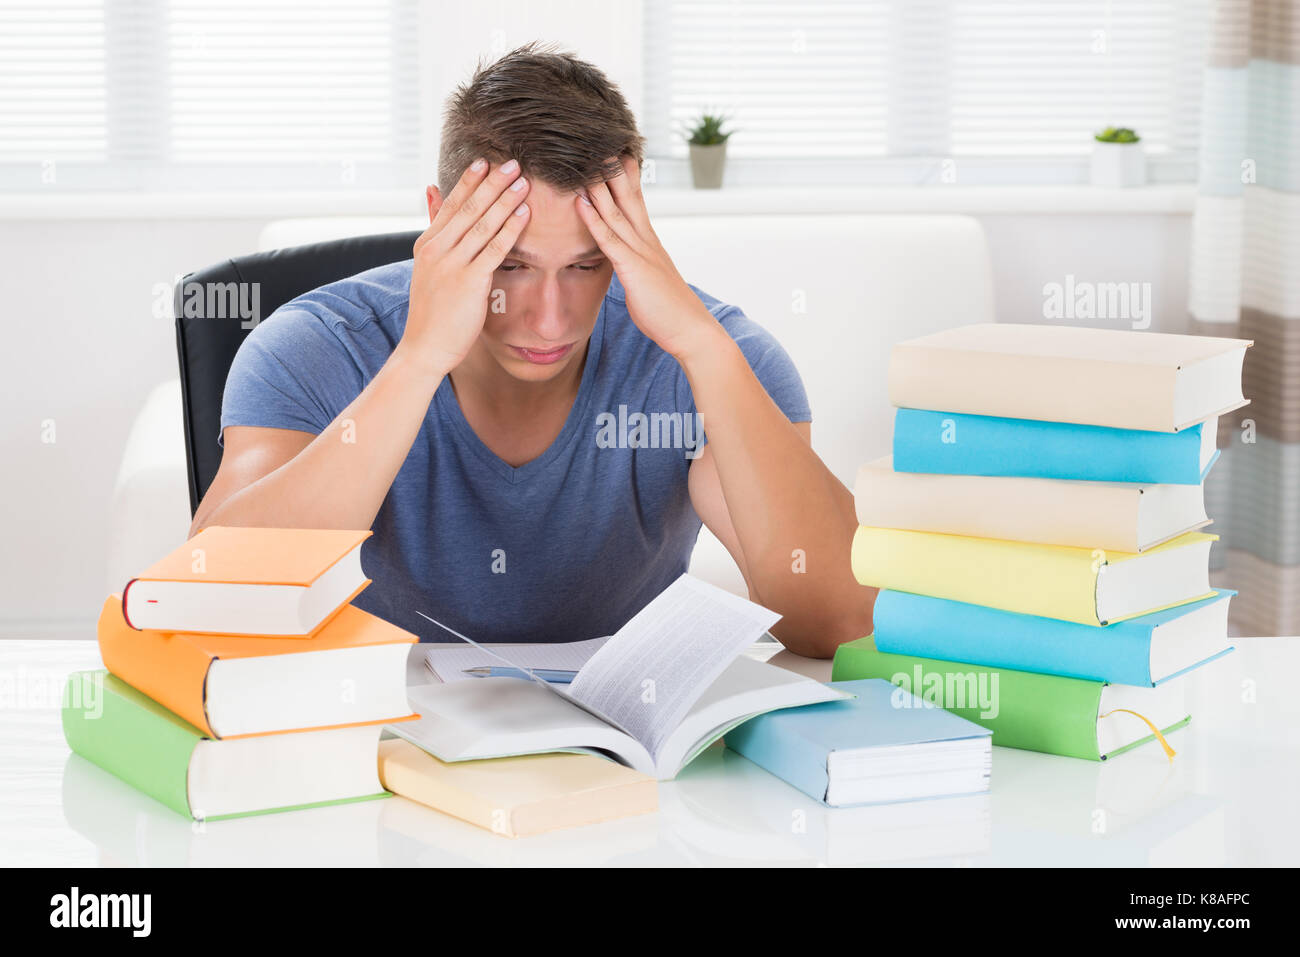 Portrait de jeune homme fatigué d'étudier des livres à 24 Banque D'Images